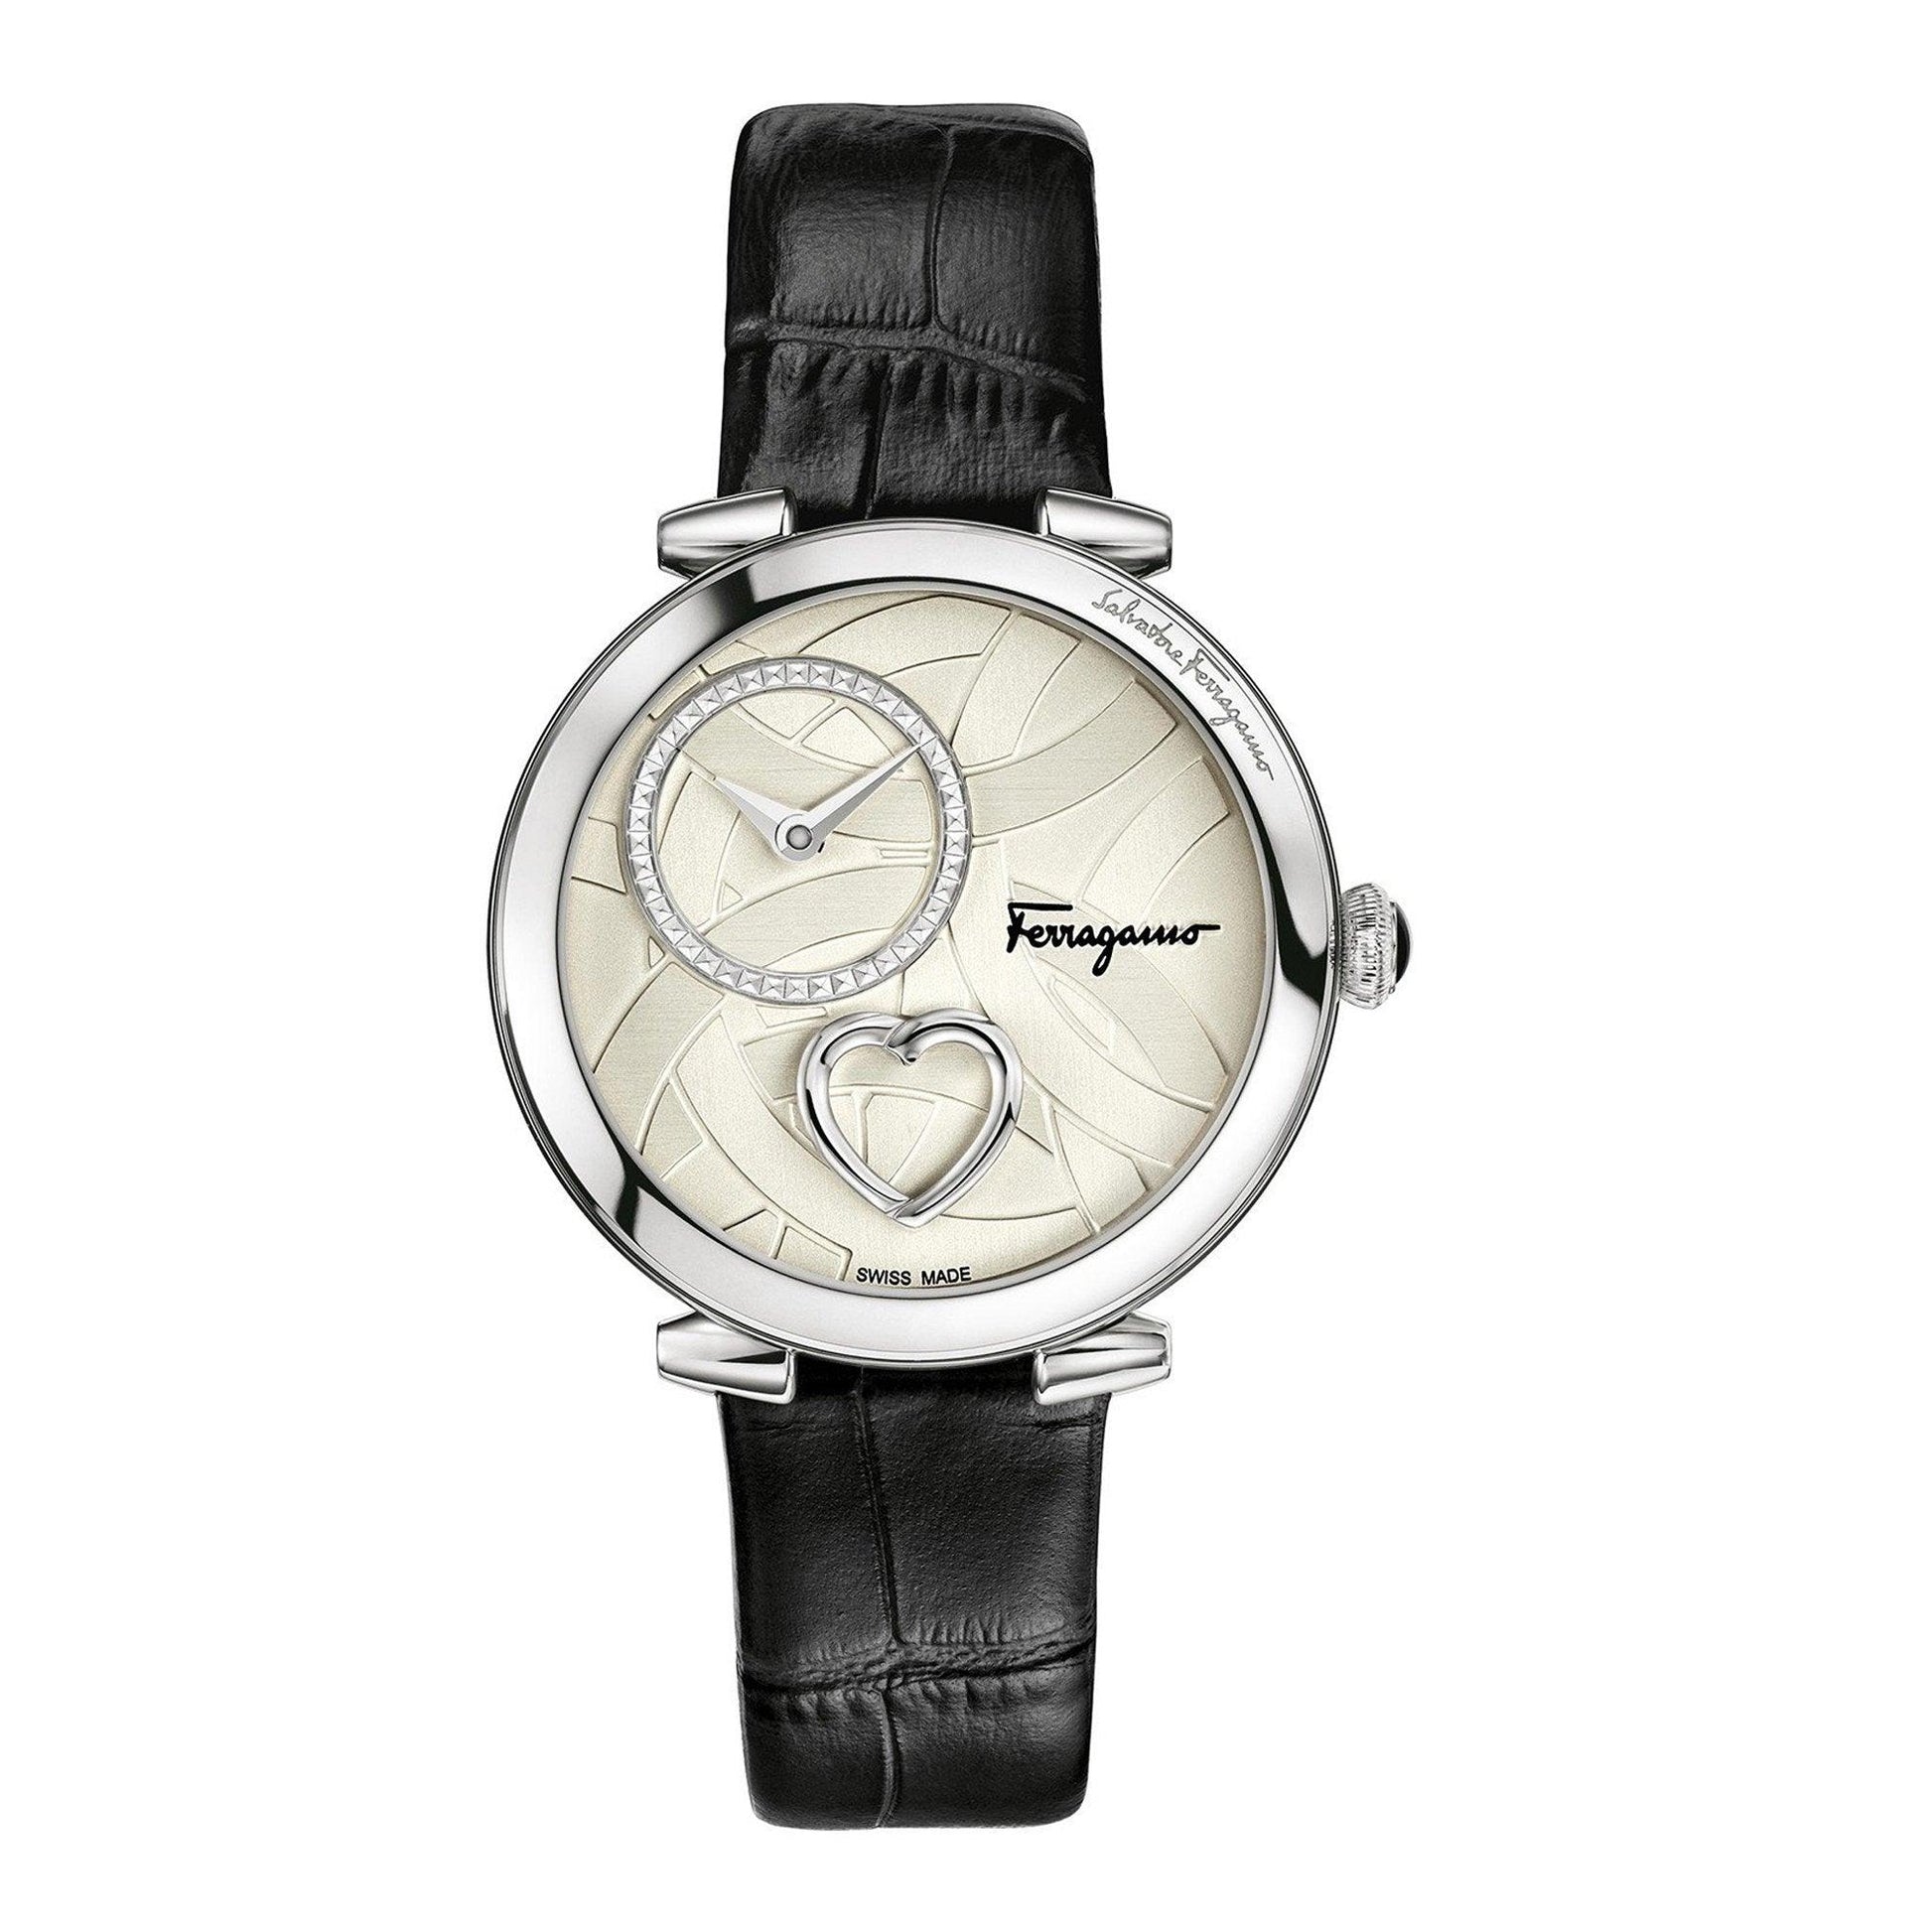 Salvatore Ferragamo Cuore FE2990016 orologio donna al quarzo - Kechiq Concept Boutique